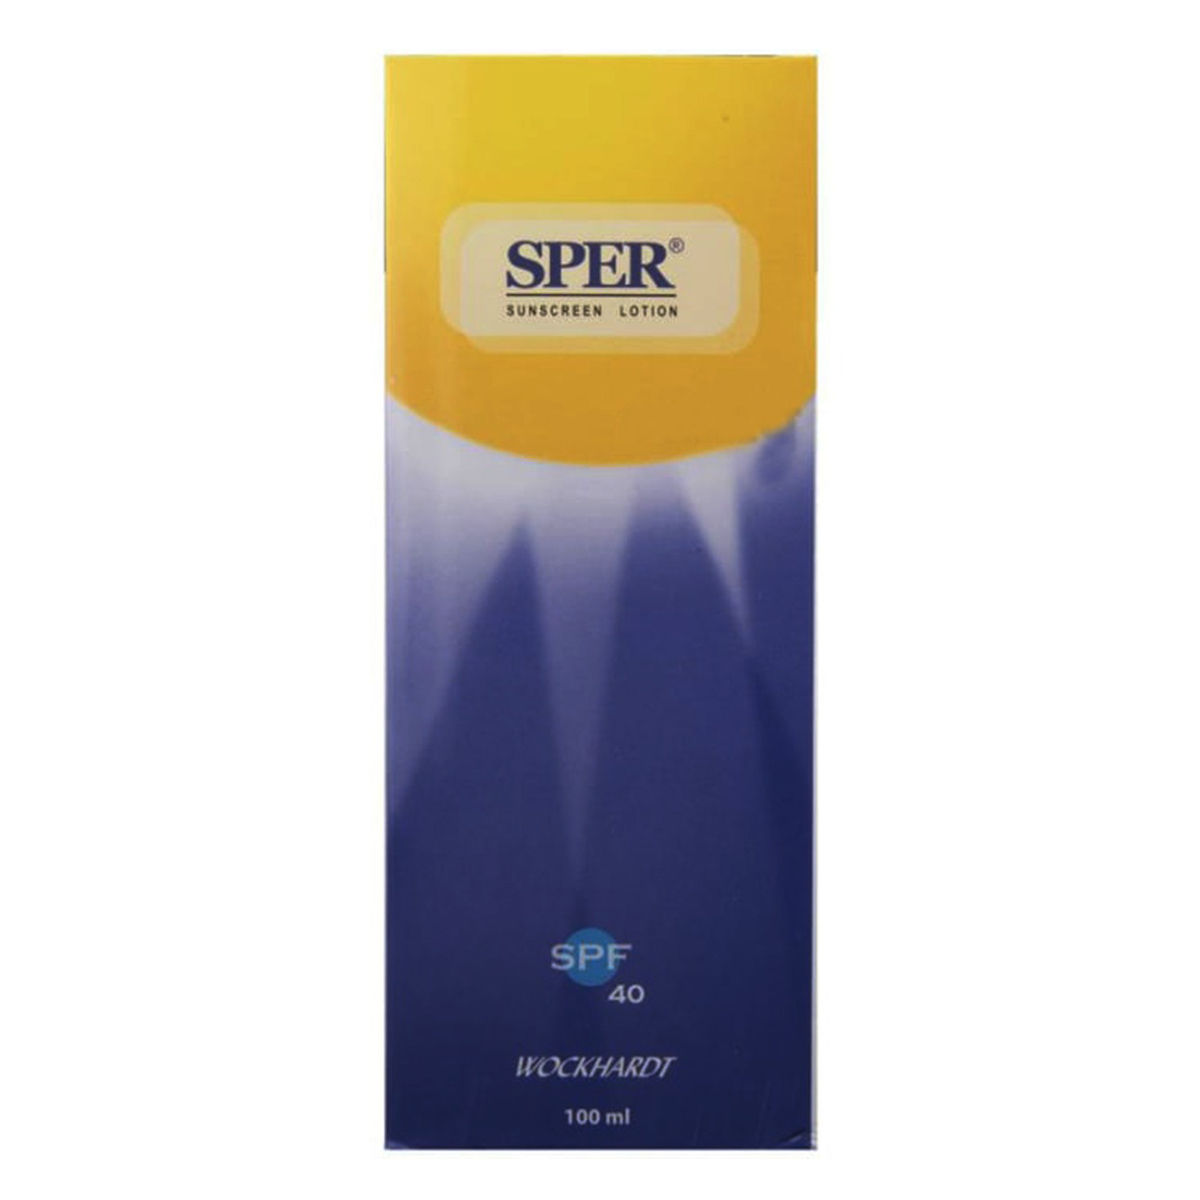 Buy Sper Sunscreen SPF 40 Lotion, 100 ml Online